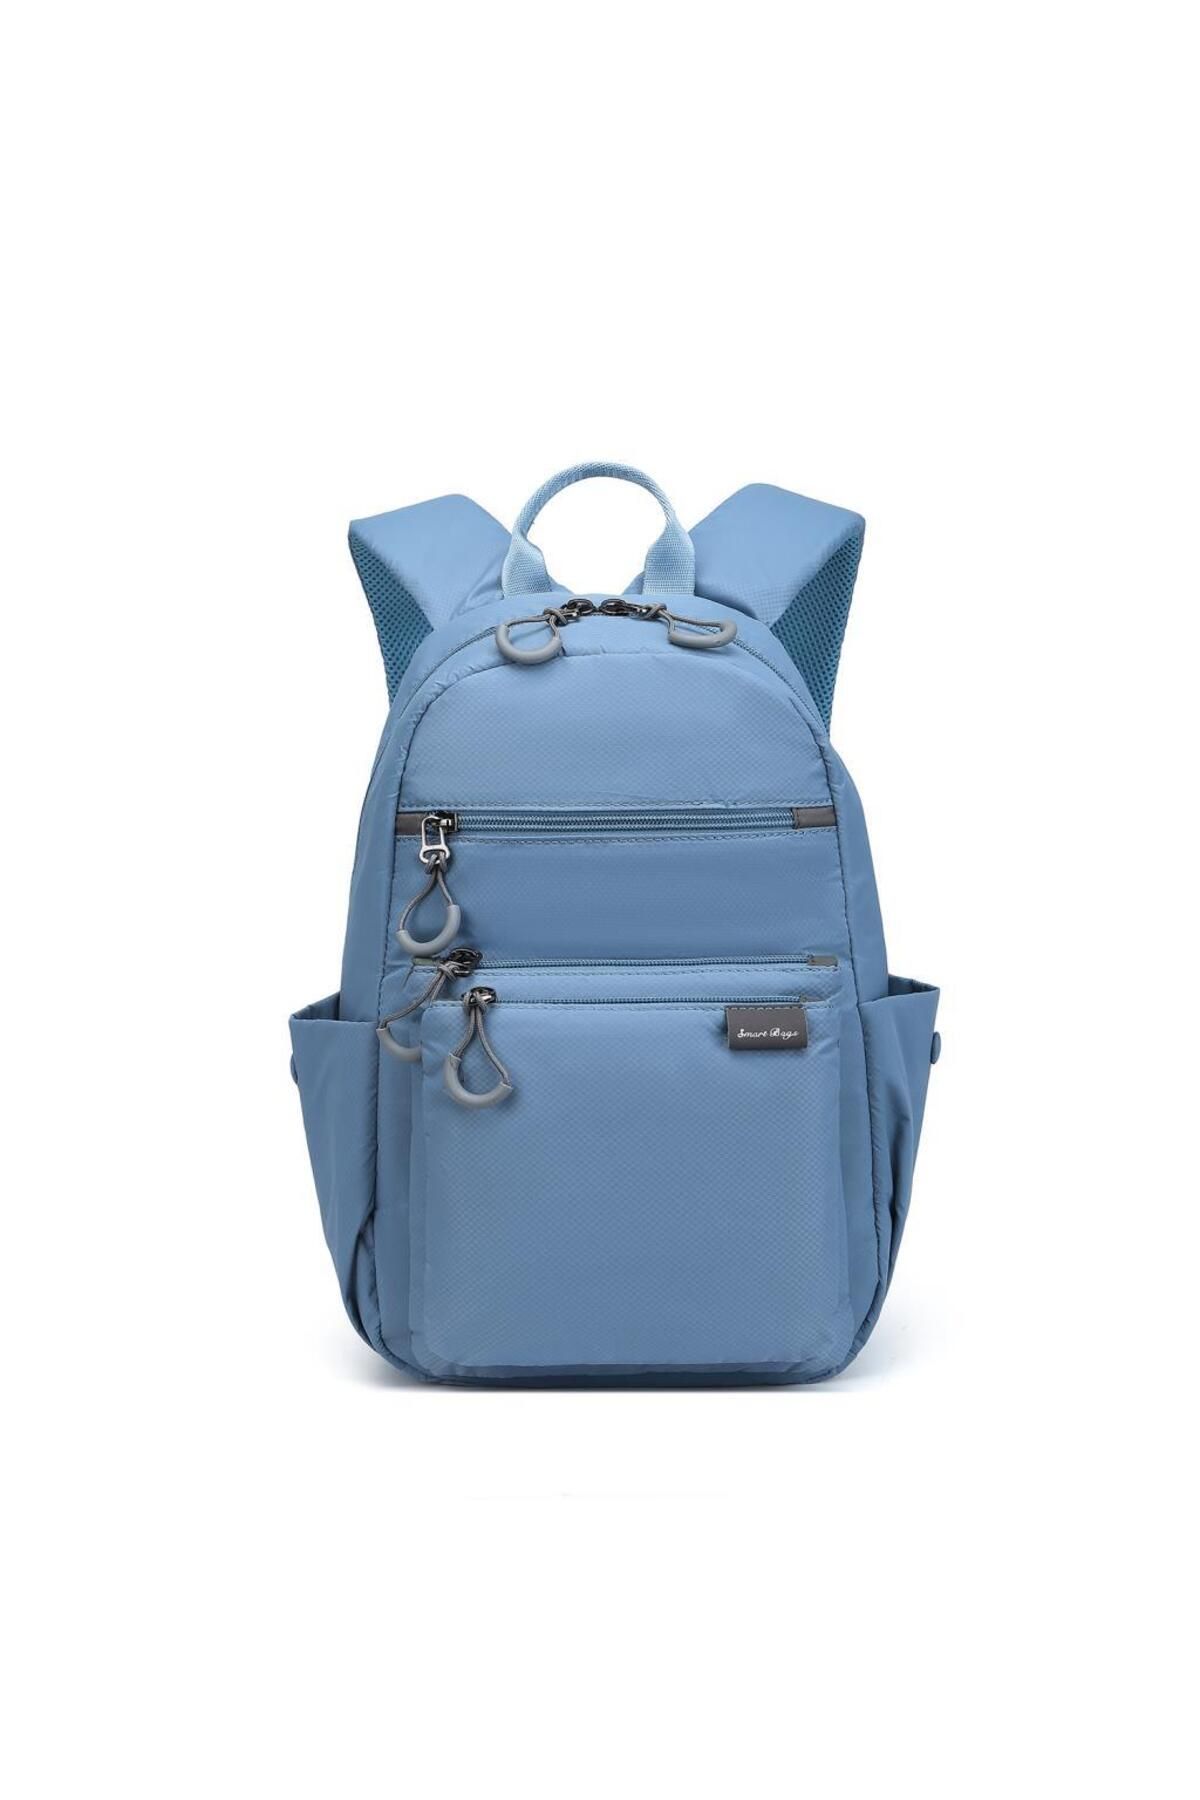 Smart Bags Küçük Boy Ekstra Hafif Uniseks Sırt Çantası 3137